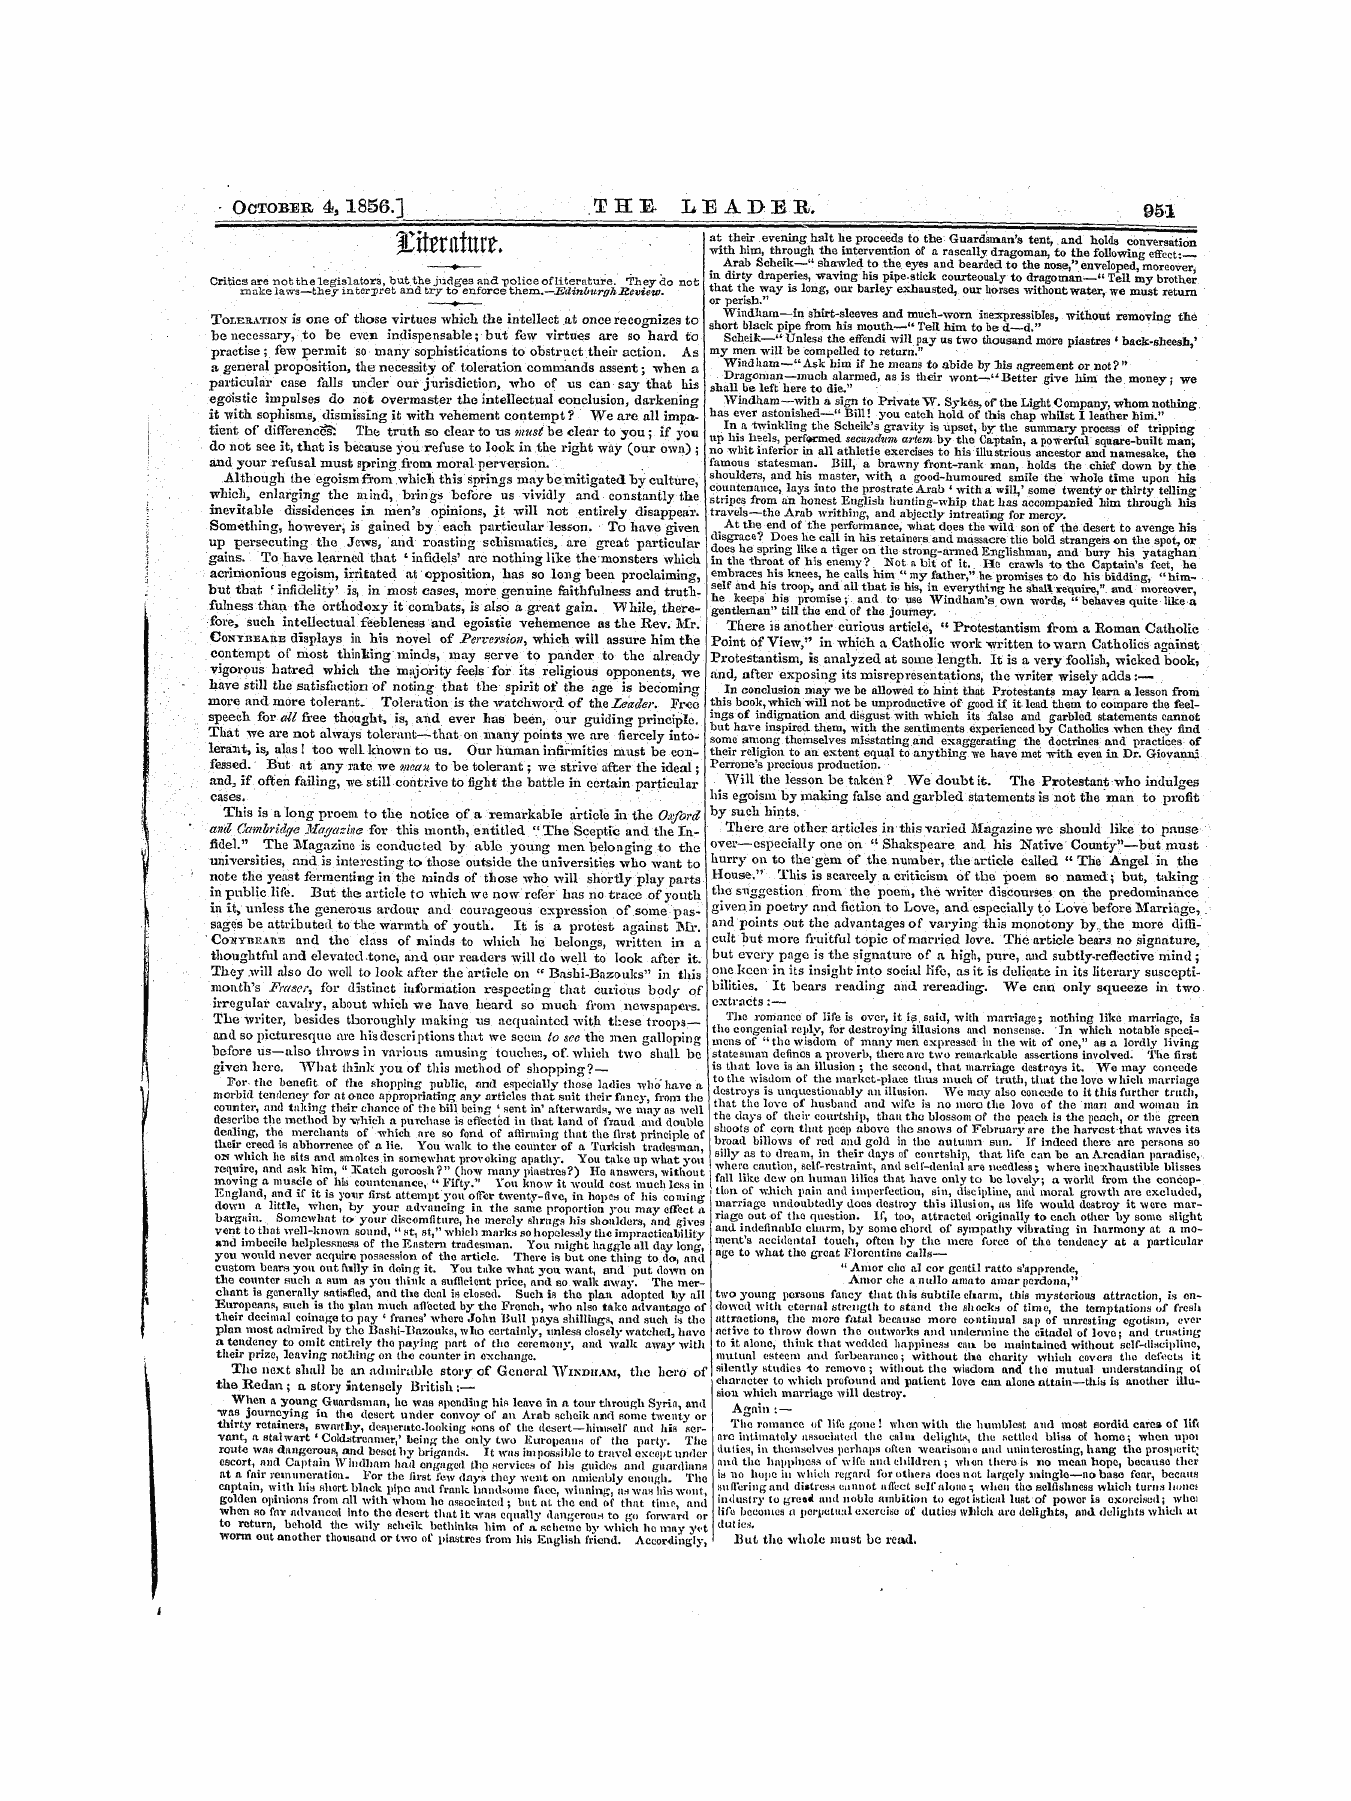 Leader (1850-1860): jS F Y, 1st edition - ^Ipttlm' Rt Titflv ^Luvvuj-Lhv* "